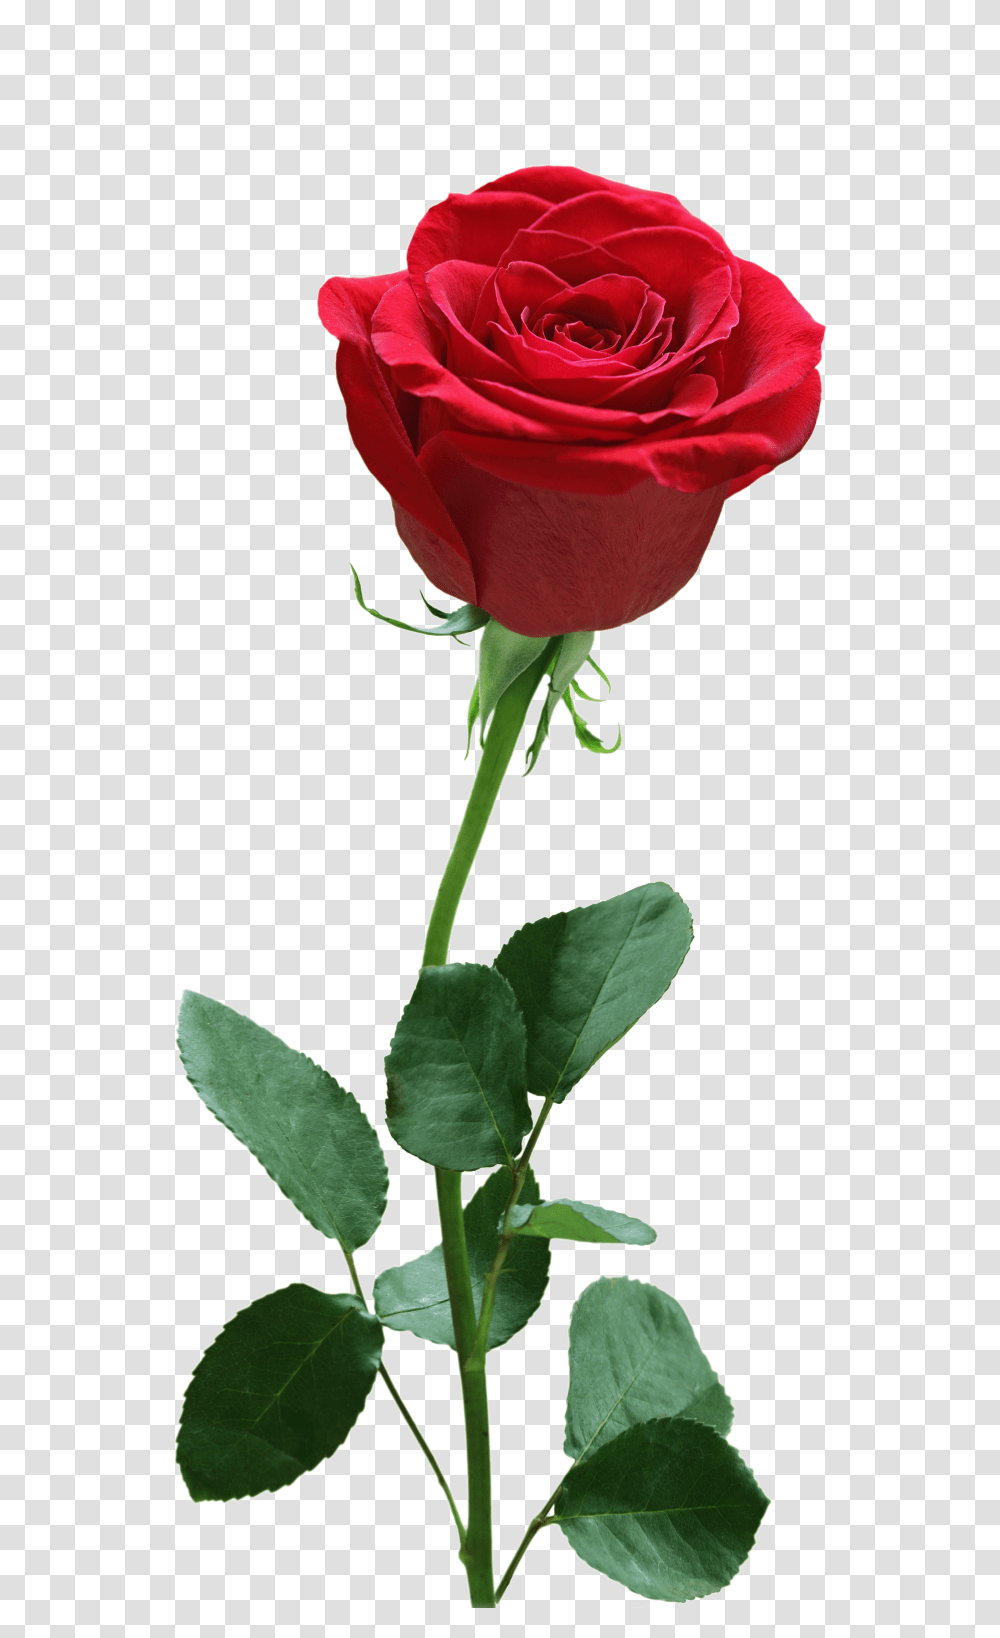 Rose Flower Image Free Download Searchpngcom Center, Plant, Blossom, Petal Transparent Png